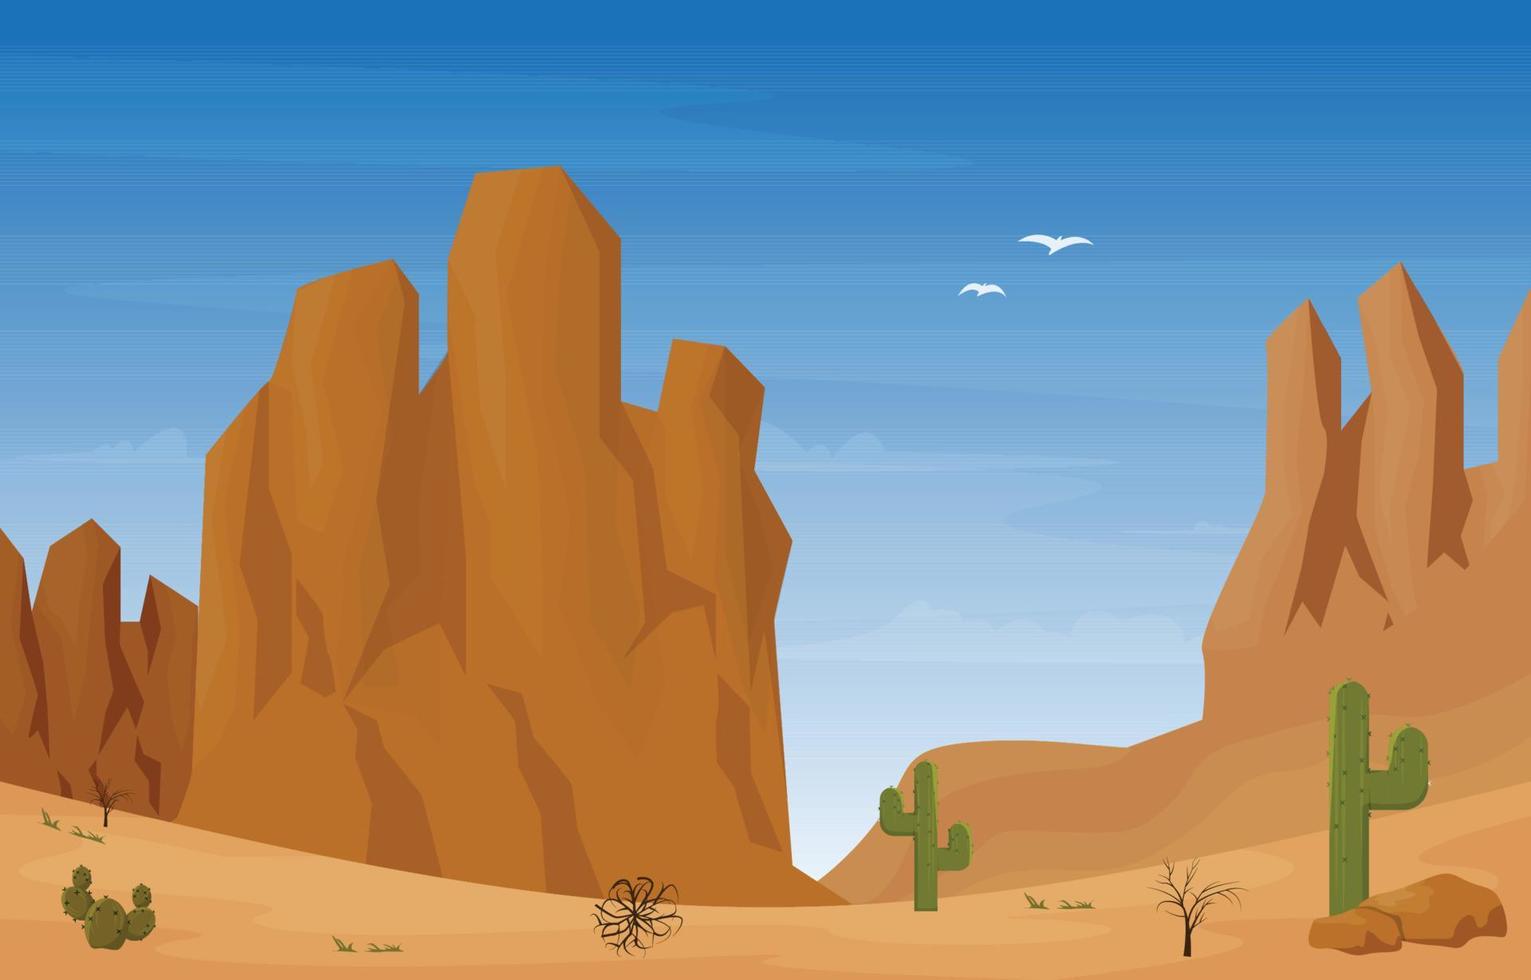 Felsenklippe Berg Wüstenland Kaktus Reise Vektor flaches Design Illustration